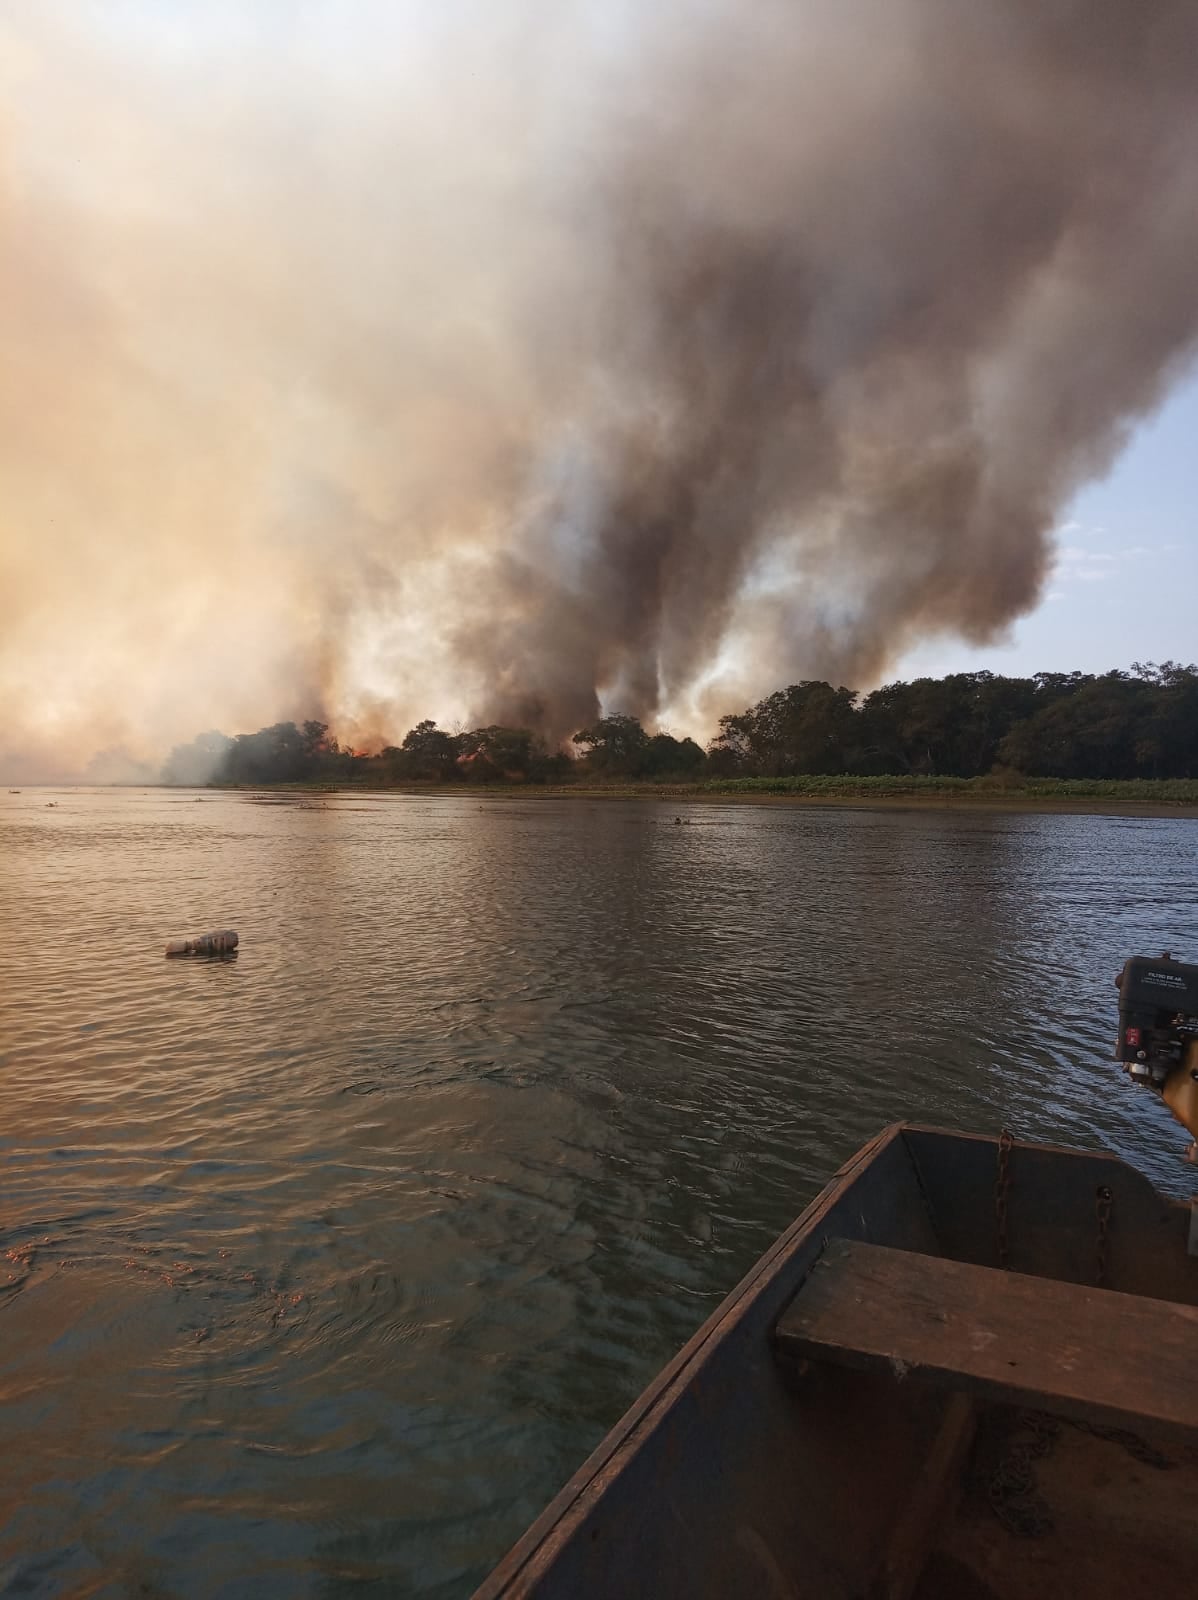 Guaíra - Município divulga imagens do grande incêndio que atinge a Ilha Grande • Portal Guaíra